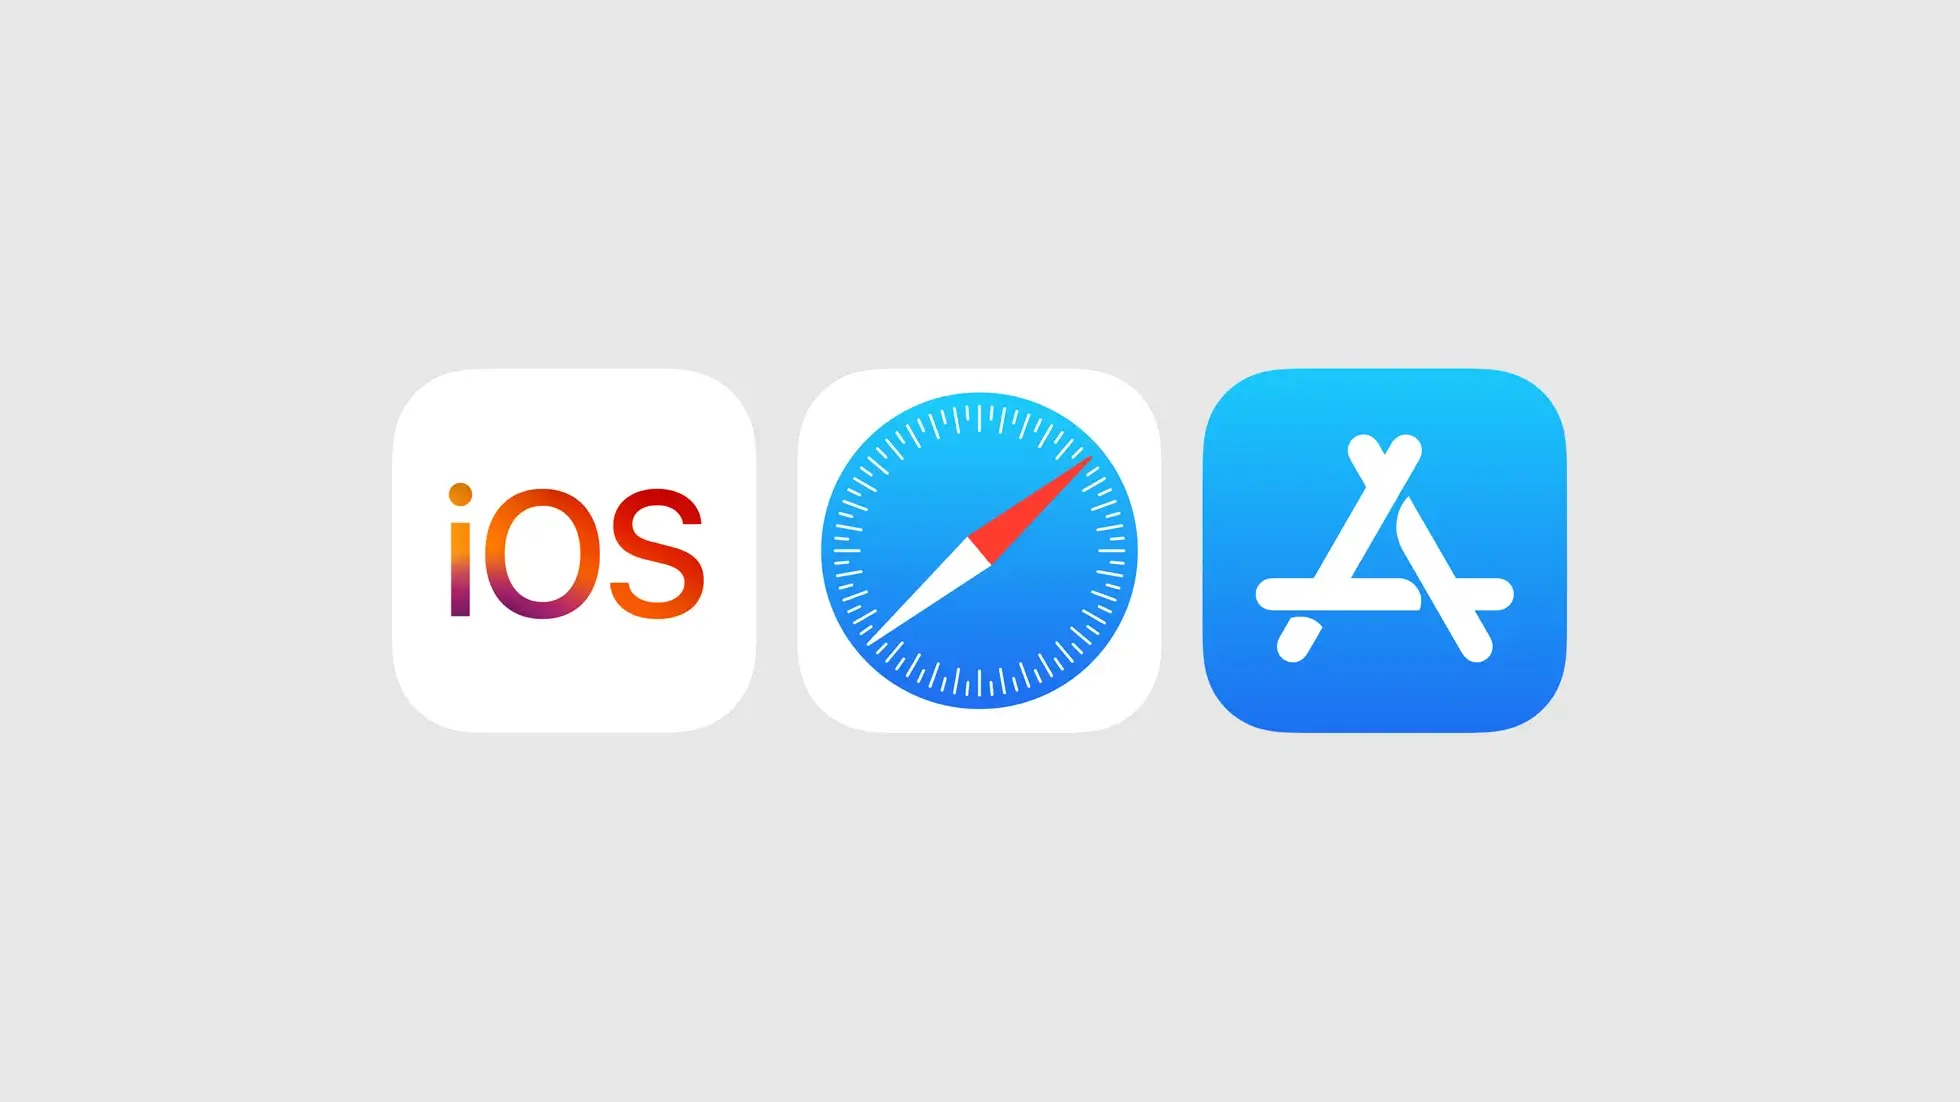 Az Apple változásokat jelentett be az iOS, a Safari és az App Store esetén az Európai Unióban